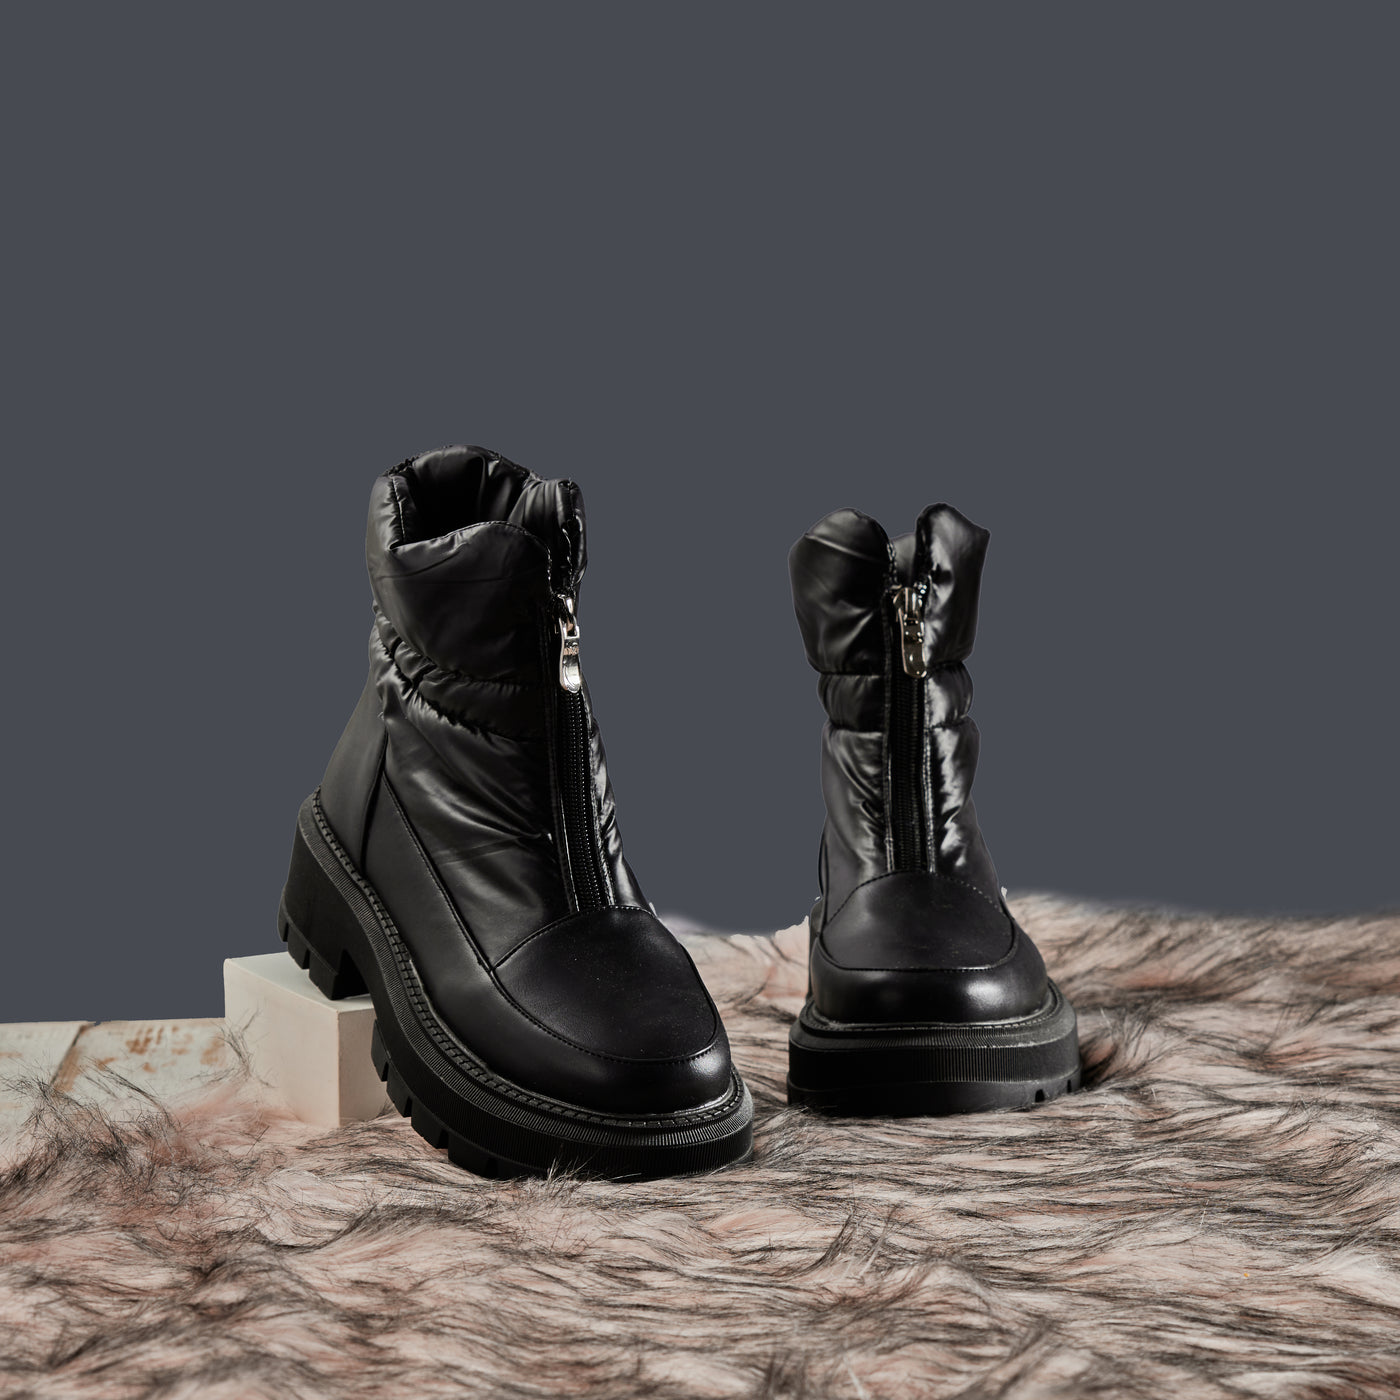 Puffer Boots - Waterproof Puffer Material